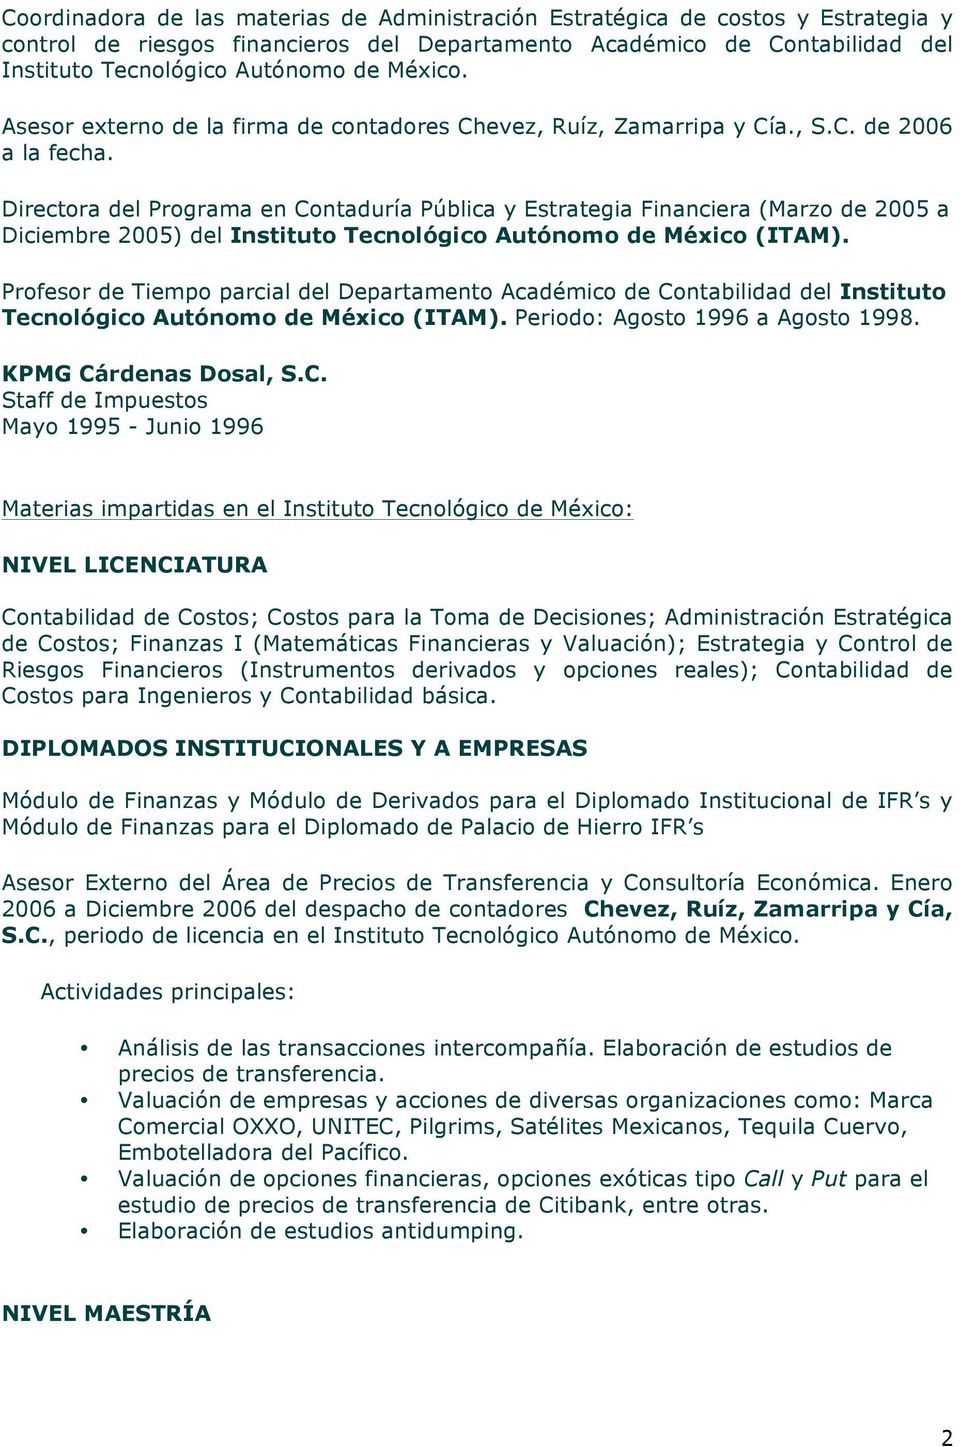 Directora del Programa en Contaduría Pública y Estrategia Financiera (Marzo de 2005 a Diciembre 2005) del Instituto Tecnológico Autónomo de México (ITAM).